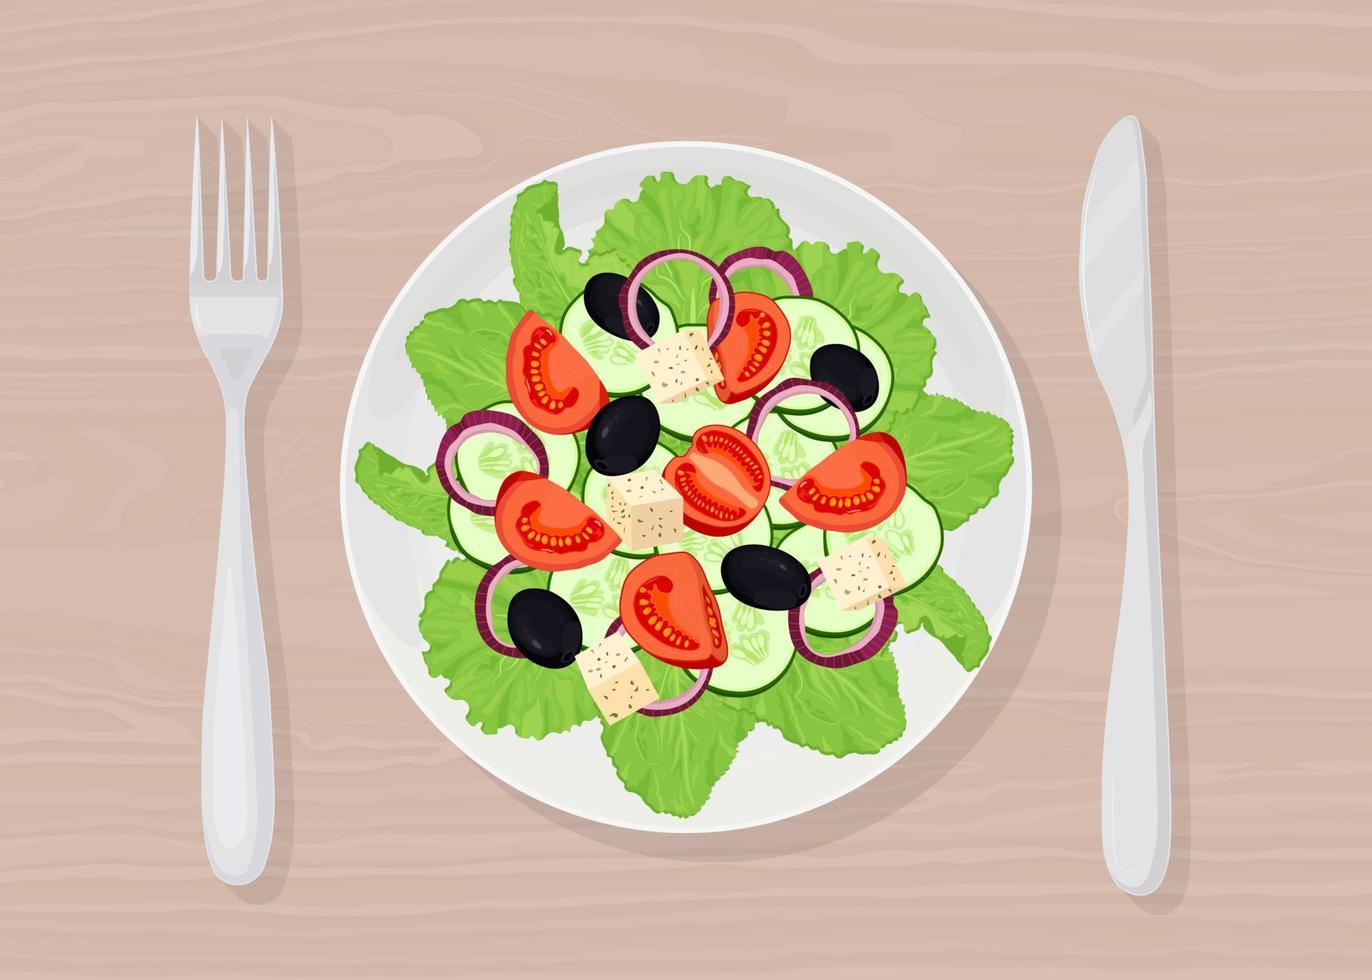 salade grecque avec feta, tomates, olives, feuilles de laitue verte vue de dessus. assiette avec fourchette, couteau vecteur